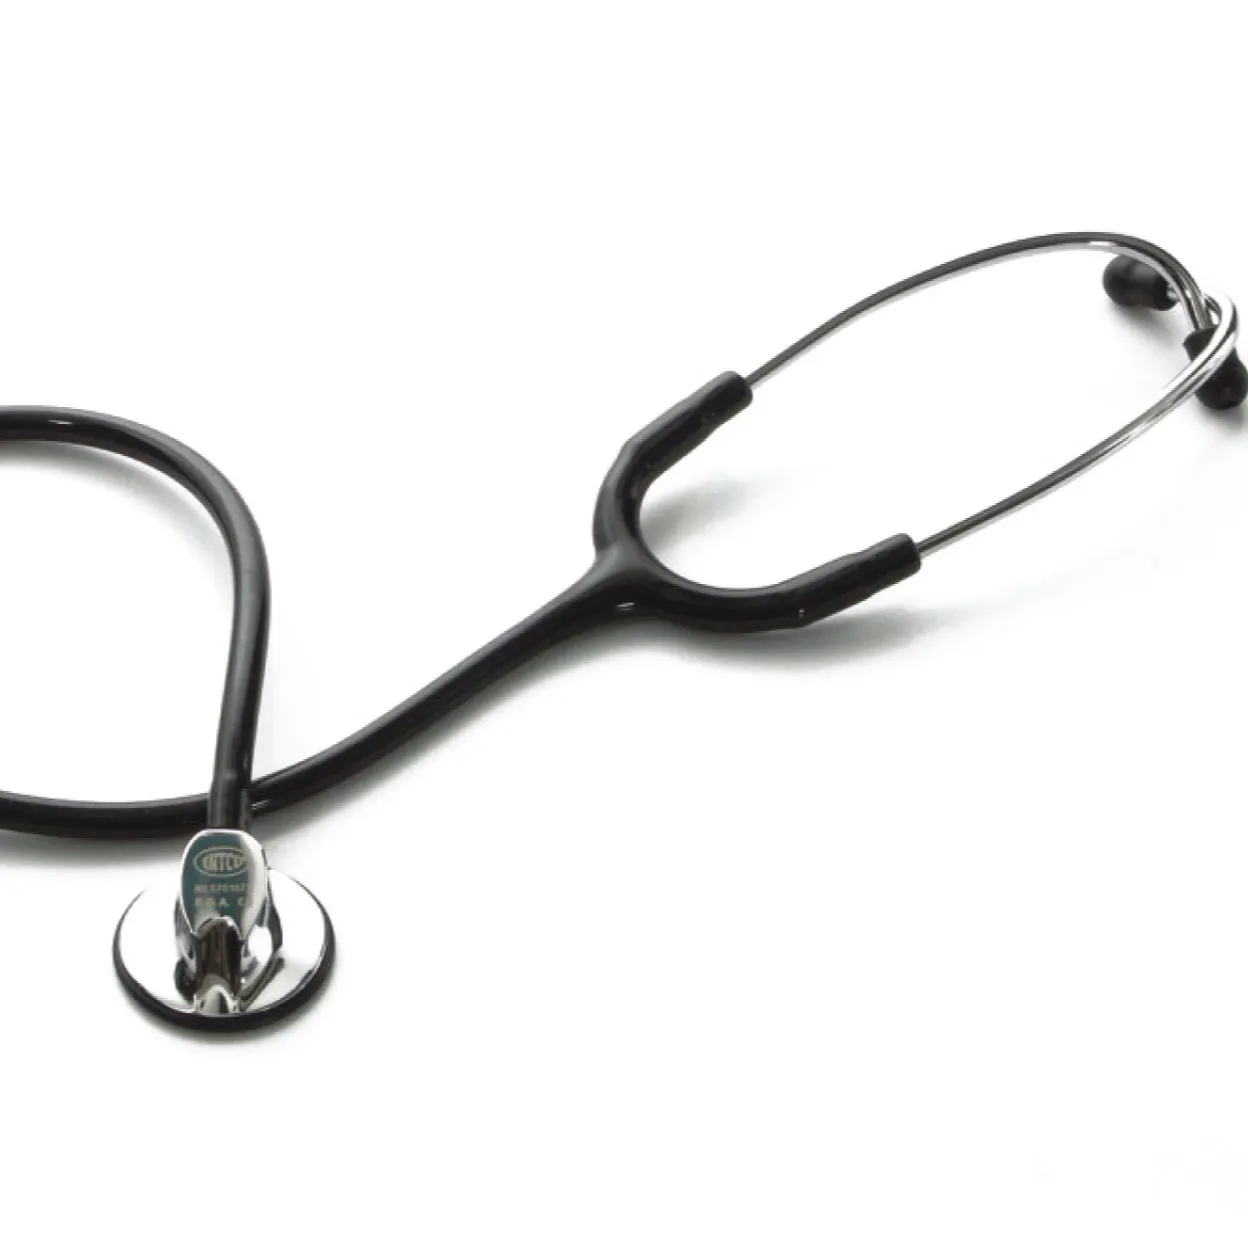 Yuwell Neues Design des Stethoskop-Heim krankenhauses verwenden beide medizinische Geräte IN-M601PF